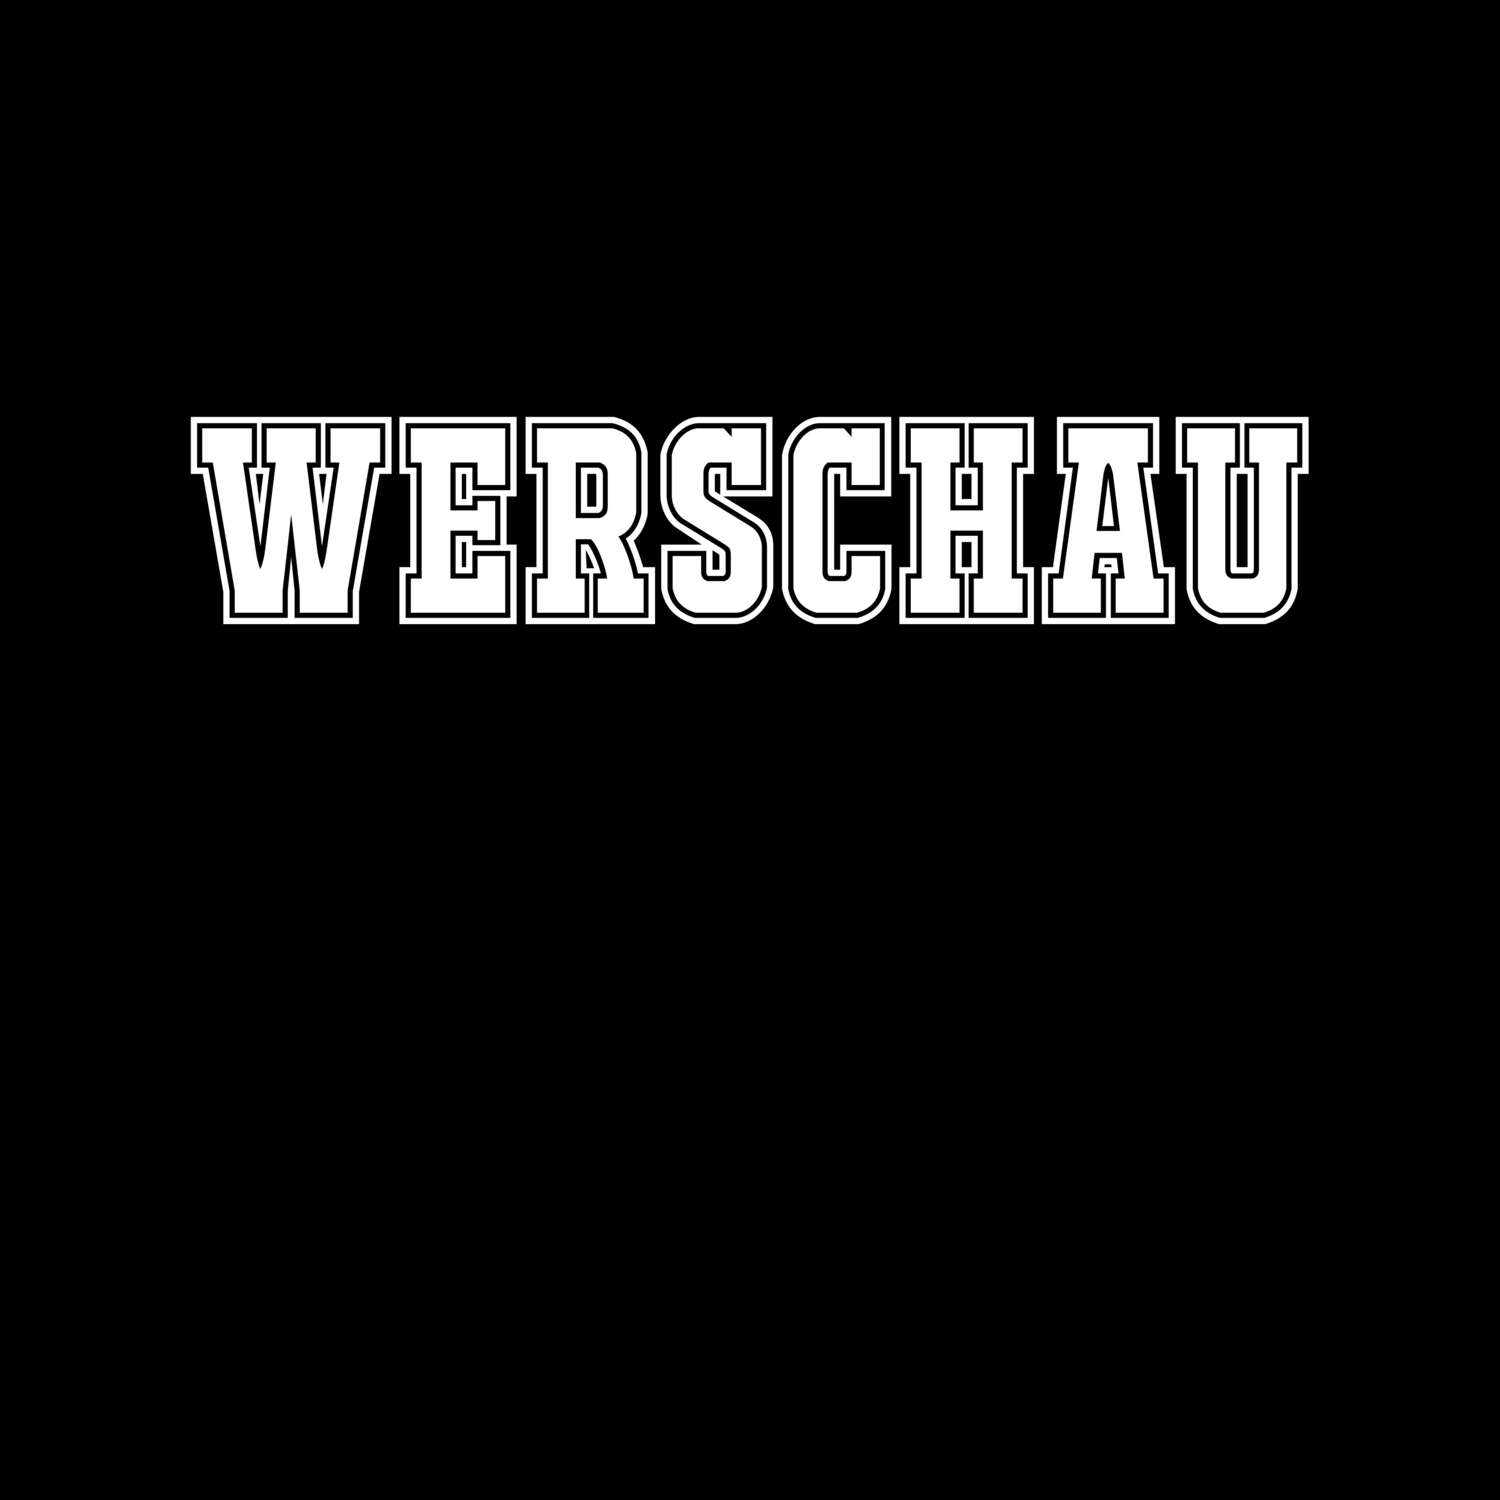 Werschau T-Shirt »Classic«